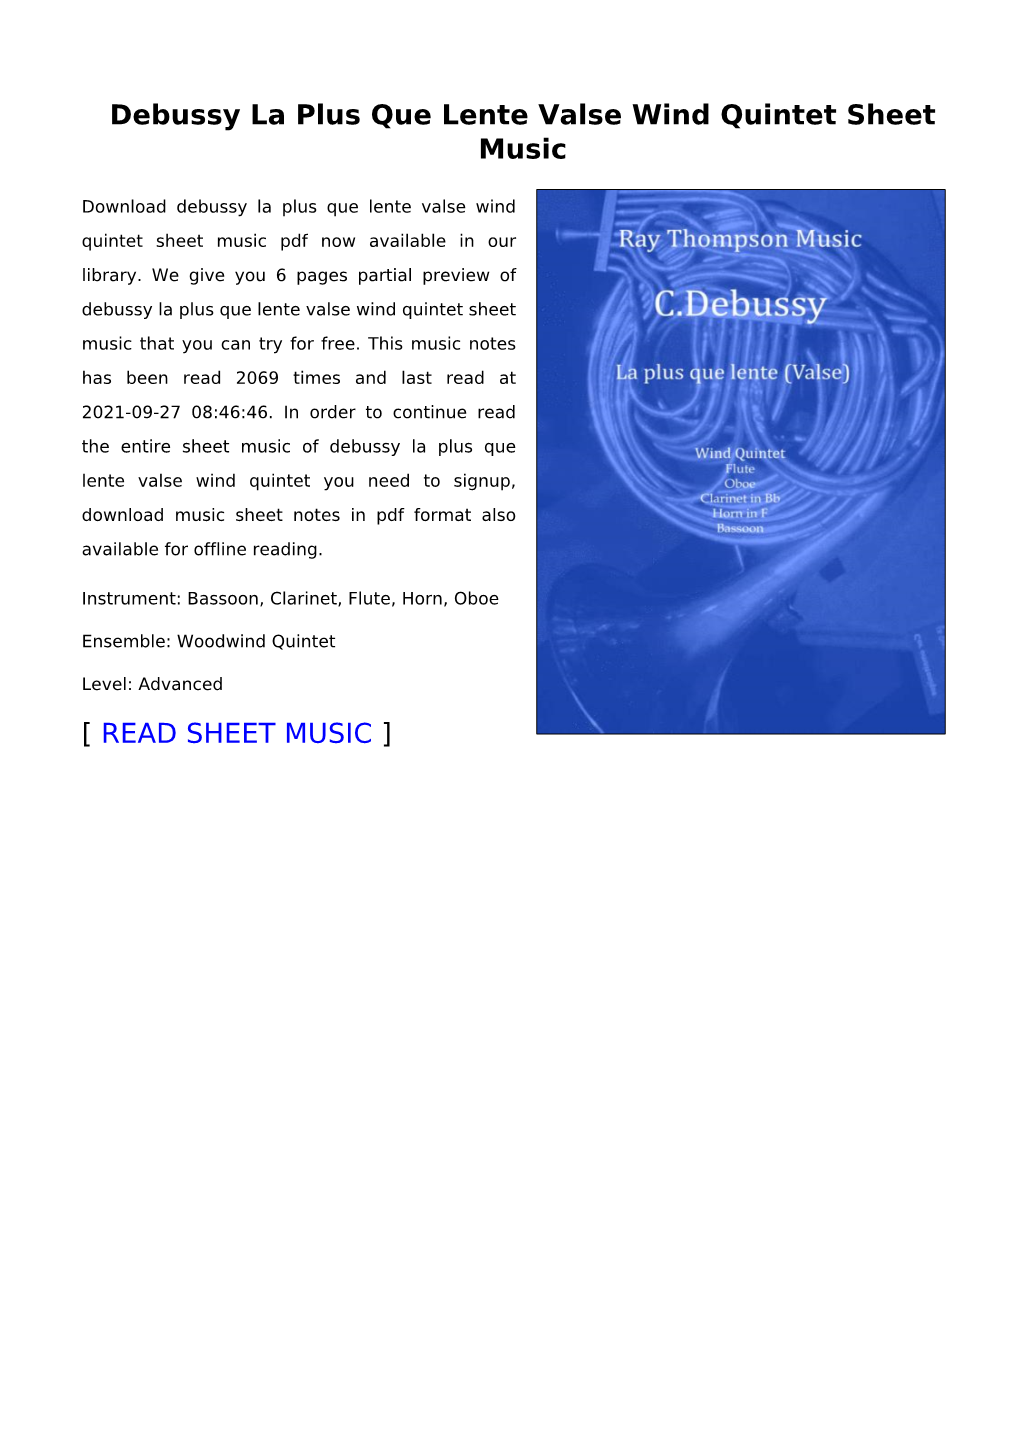 Debussy La Plus Que Lente Valse Wind Quintet Sheet Music